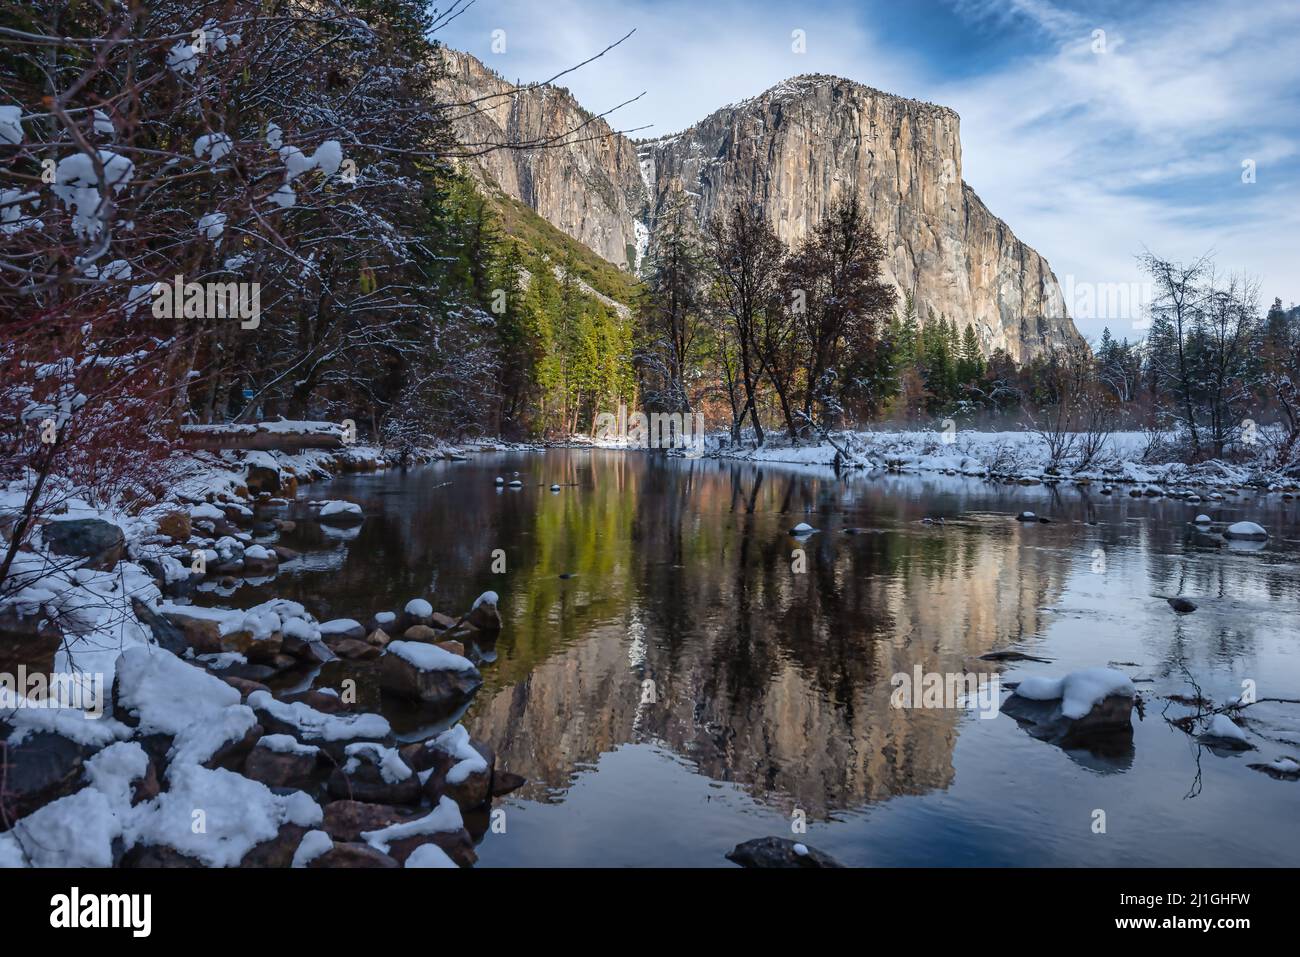 La célèbre montagne d'El Capitan se reflète sur la Merced River en hiver, dans le parc national de Yosemite Banque D'Images